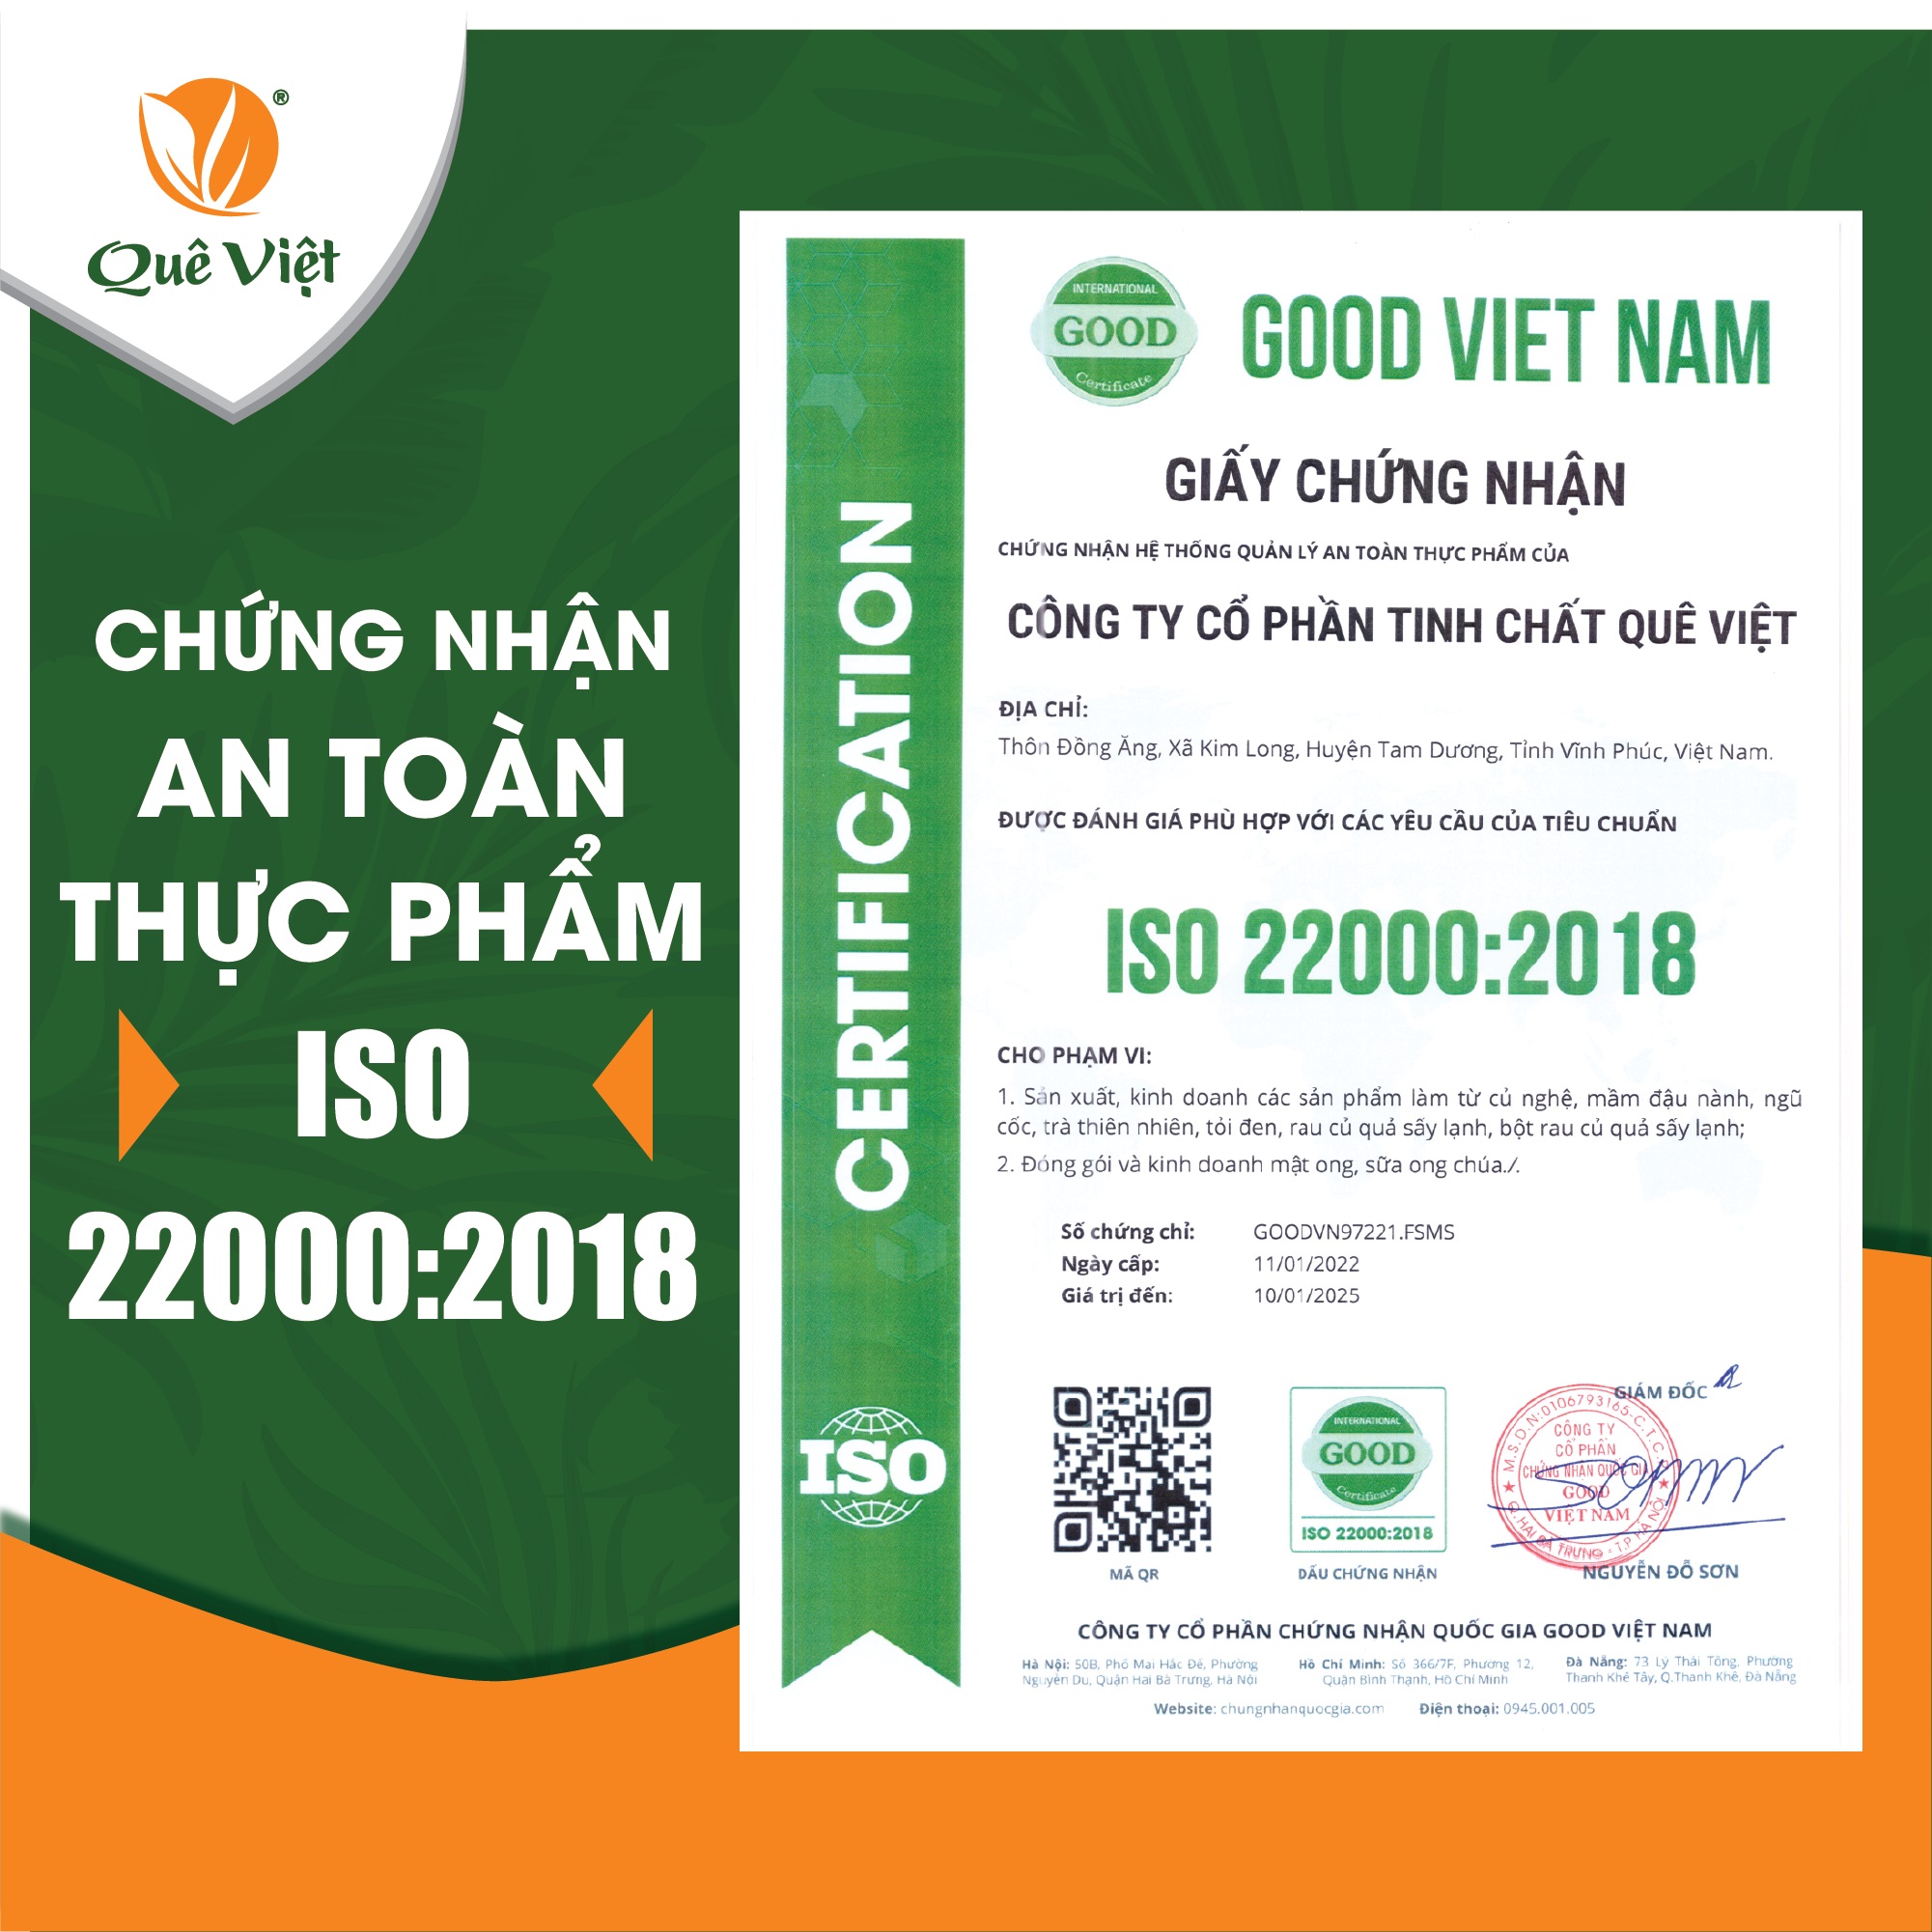 Trà gạo lứt Quê Việt thanh lọc gan, giải độc cơ thể nguyên liệu tự nhiên an toàn (2 hộp x 600gr)